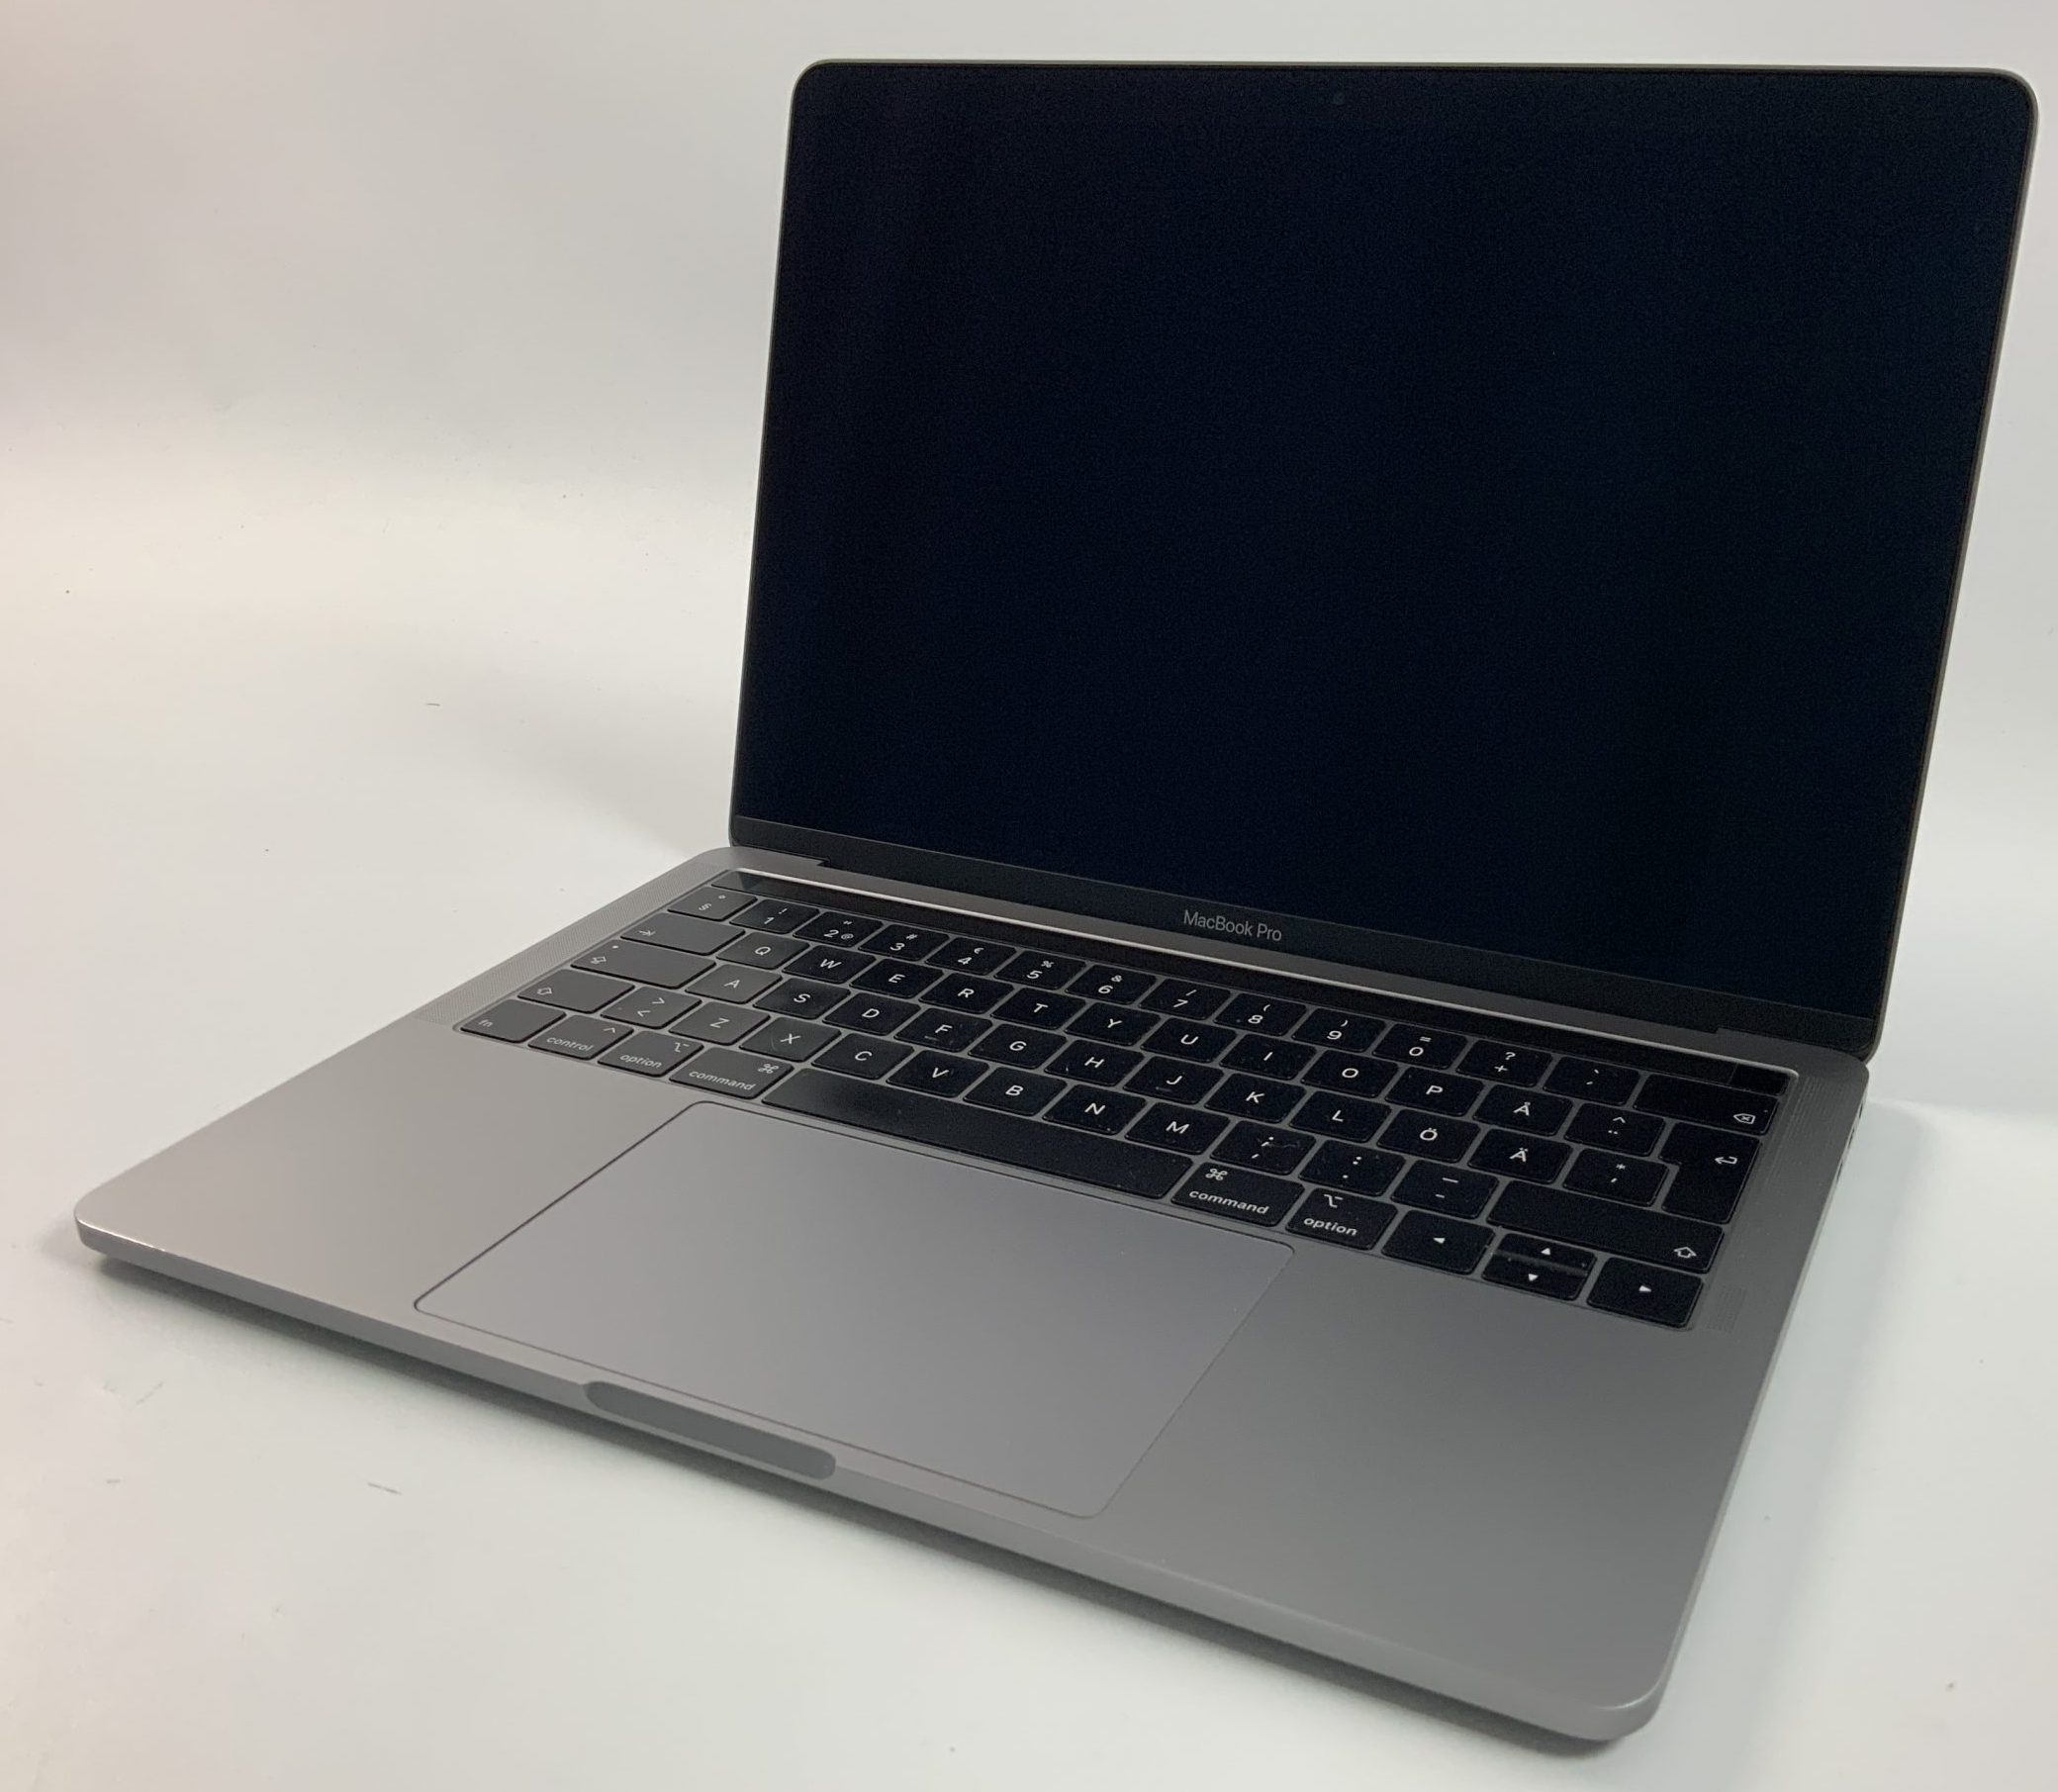 MacBook Pro 13" 4TBT Mid 2019 (Intel Quad-Core i5 2.4 GHz 16 GB RAM 512 GB SSD), Space Gray, Intel Quad-Core i5 2.4 GHz, 16 GB RAM, 512 GB SSD, Kuva 1